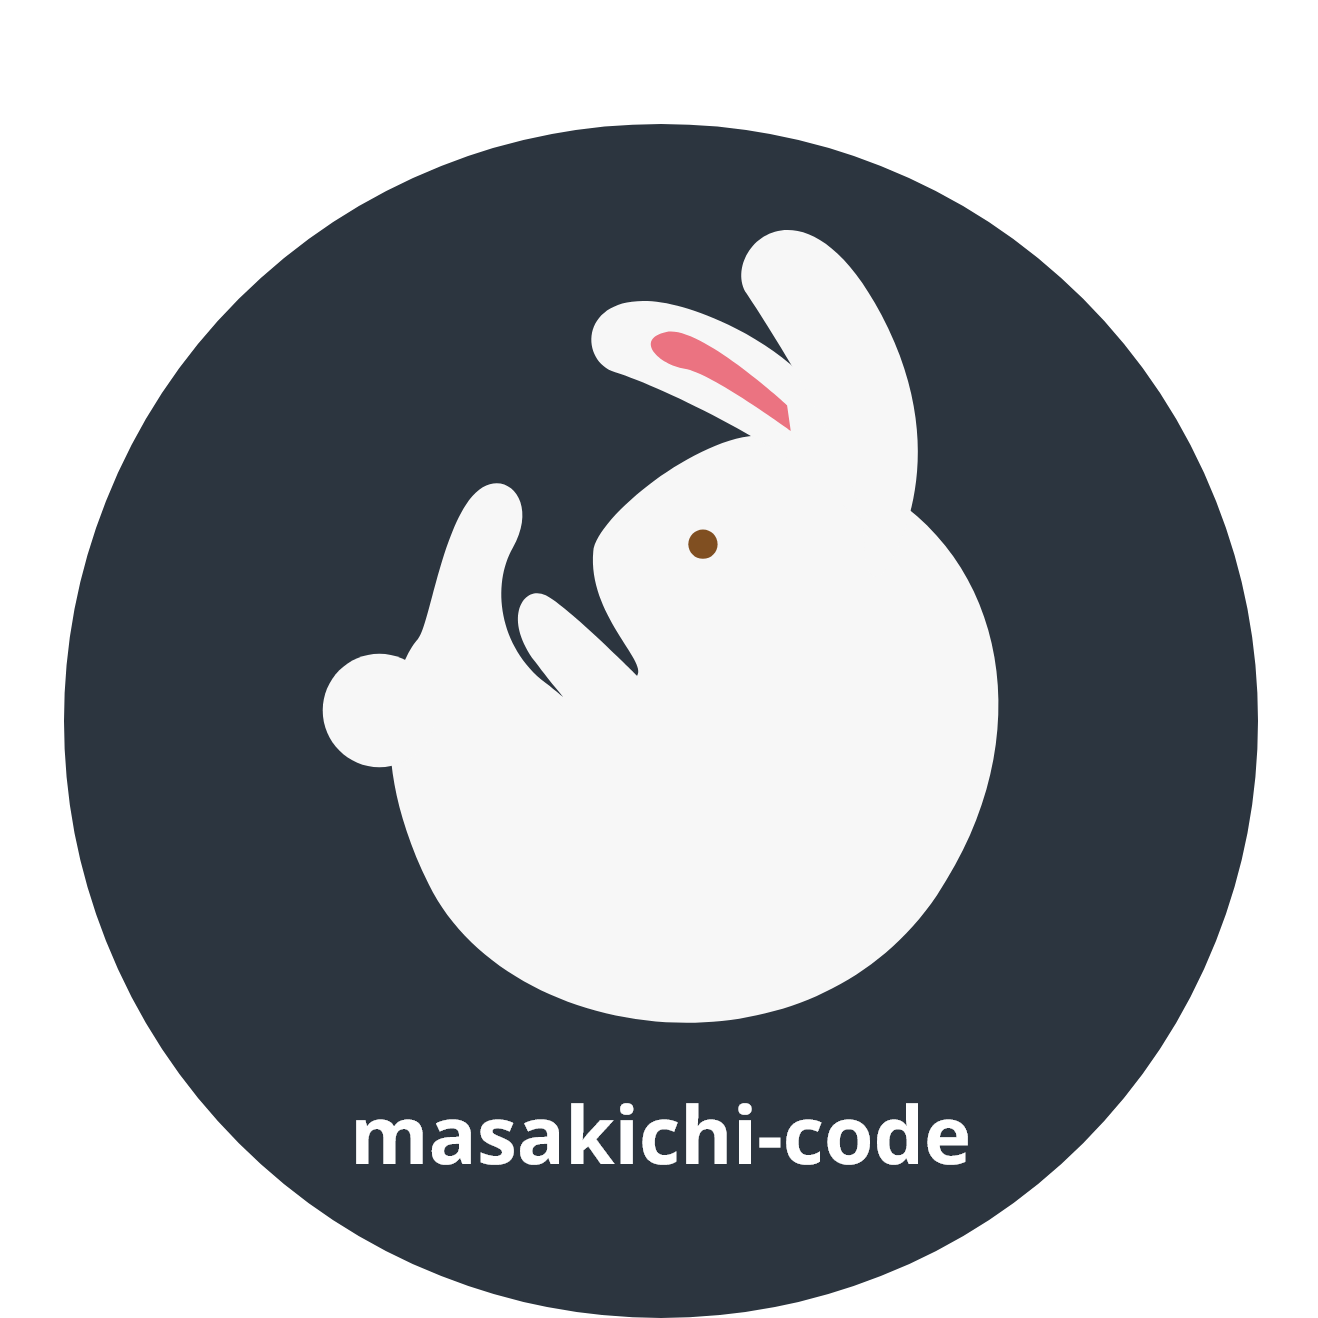 masakichi-code